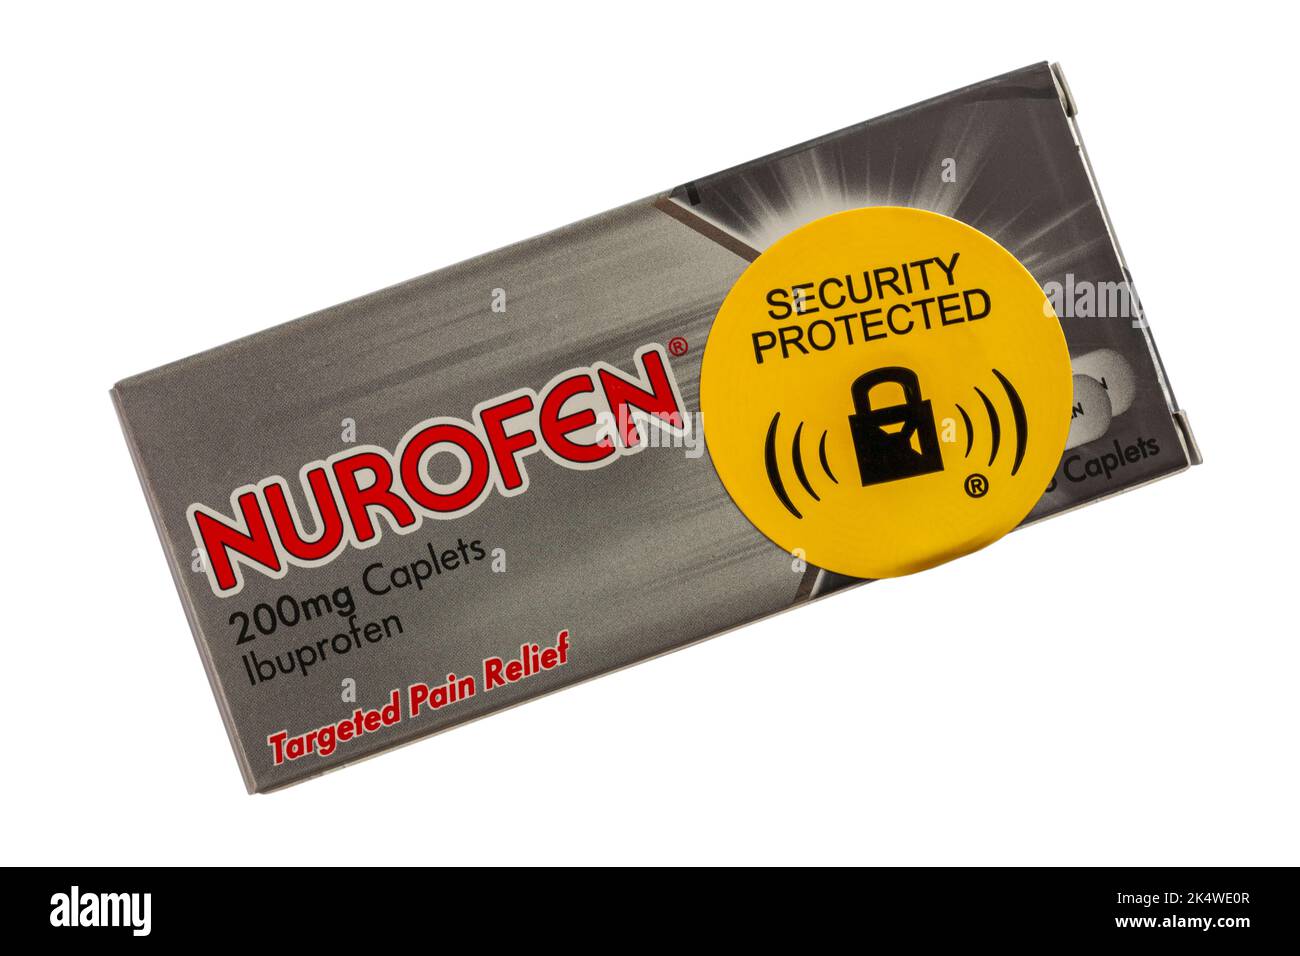 Etichetta adesiva protetta sulla confezione di caplet Nurofen 200mg Ibuprofen sollievo dal dolore mirato isolato su sfondo bianco Foto Stock